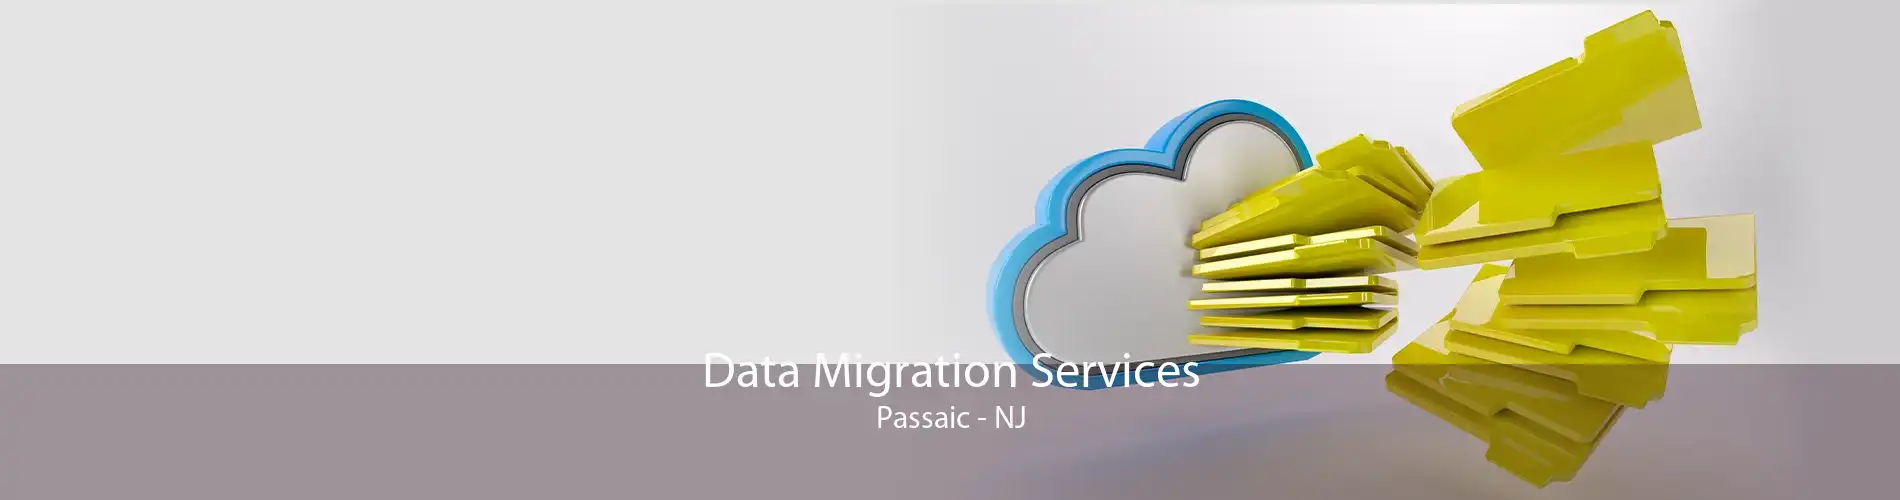 Data Migration Services Passaic - NJ